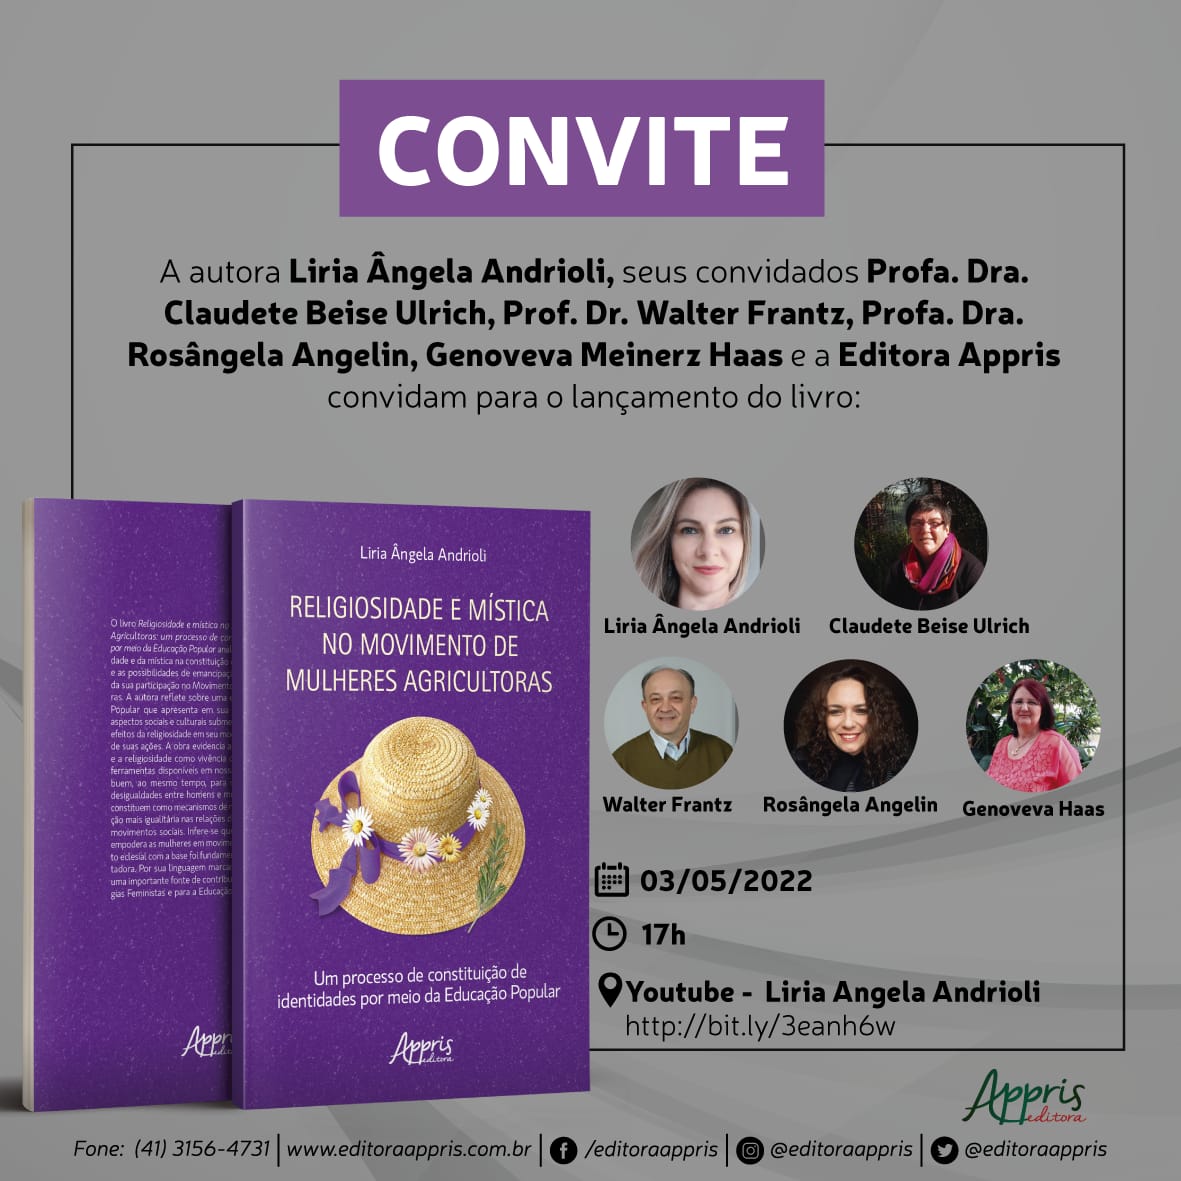 Lançamento do livro: "Religiosidade e mística no Movimento de Mulheres Agricultoras: um processo de constituição de identidades por meio da educação popular"